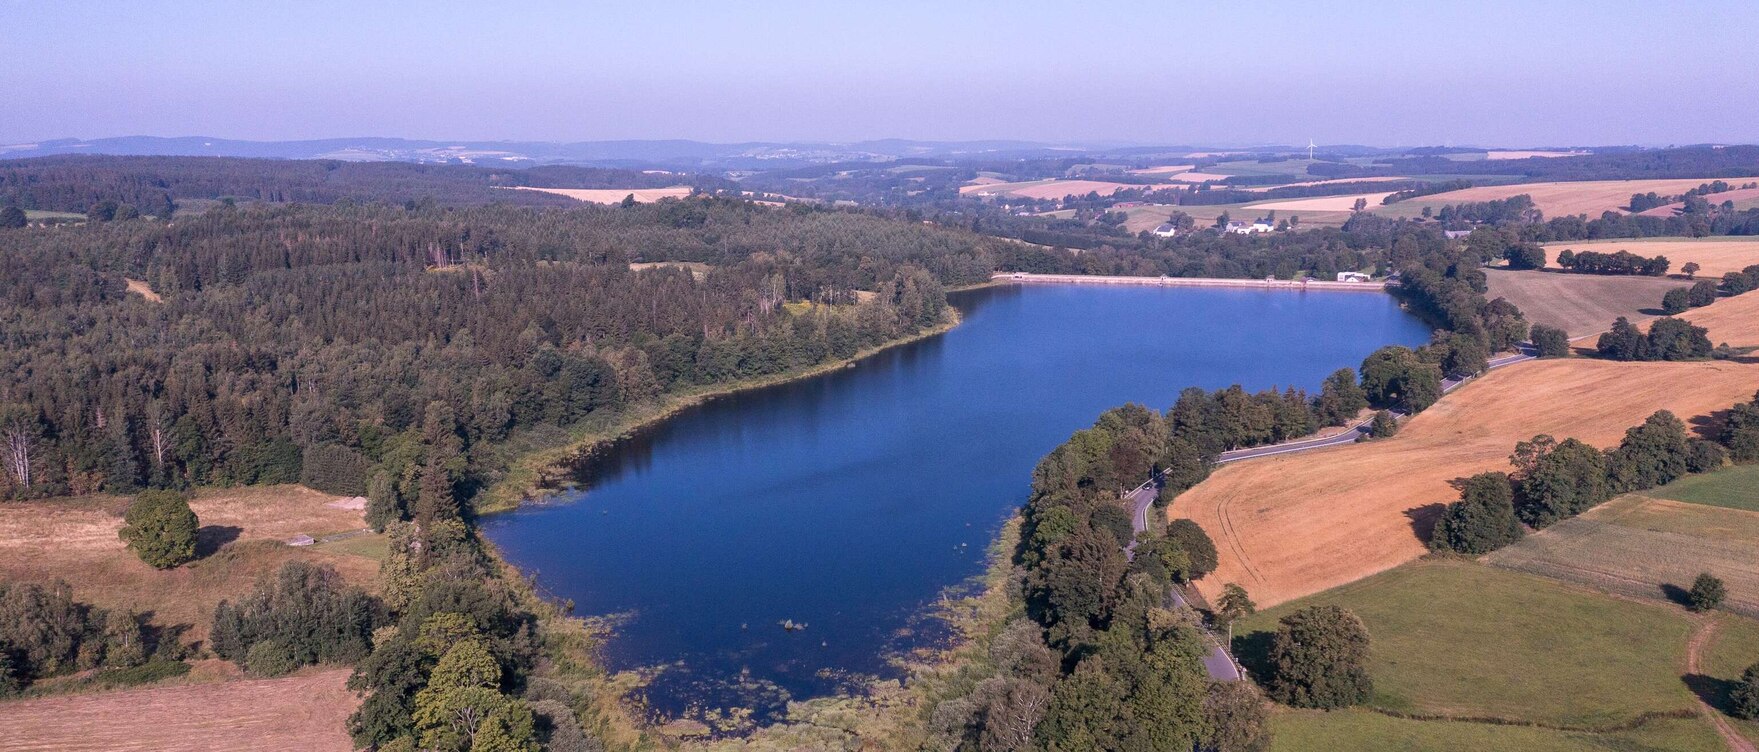 Luftbild eines Sees umgeben von Bäumen und Feldern